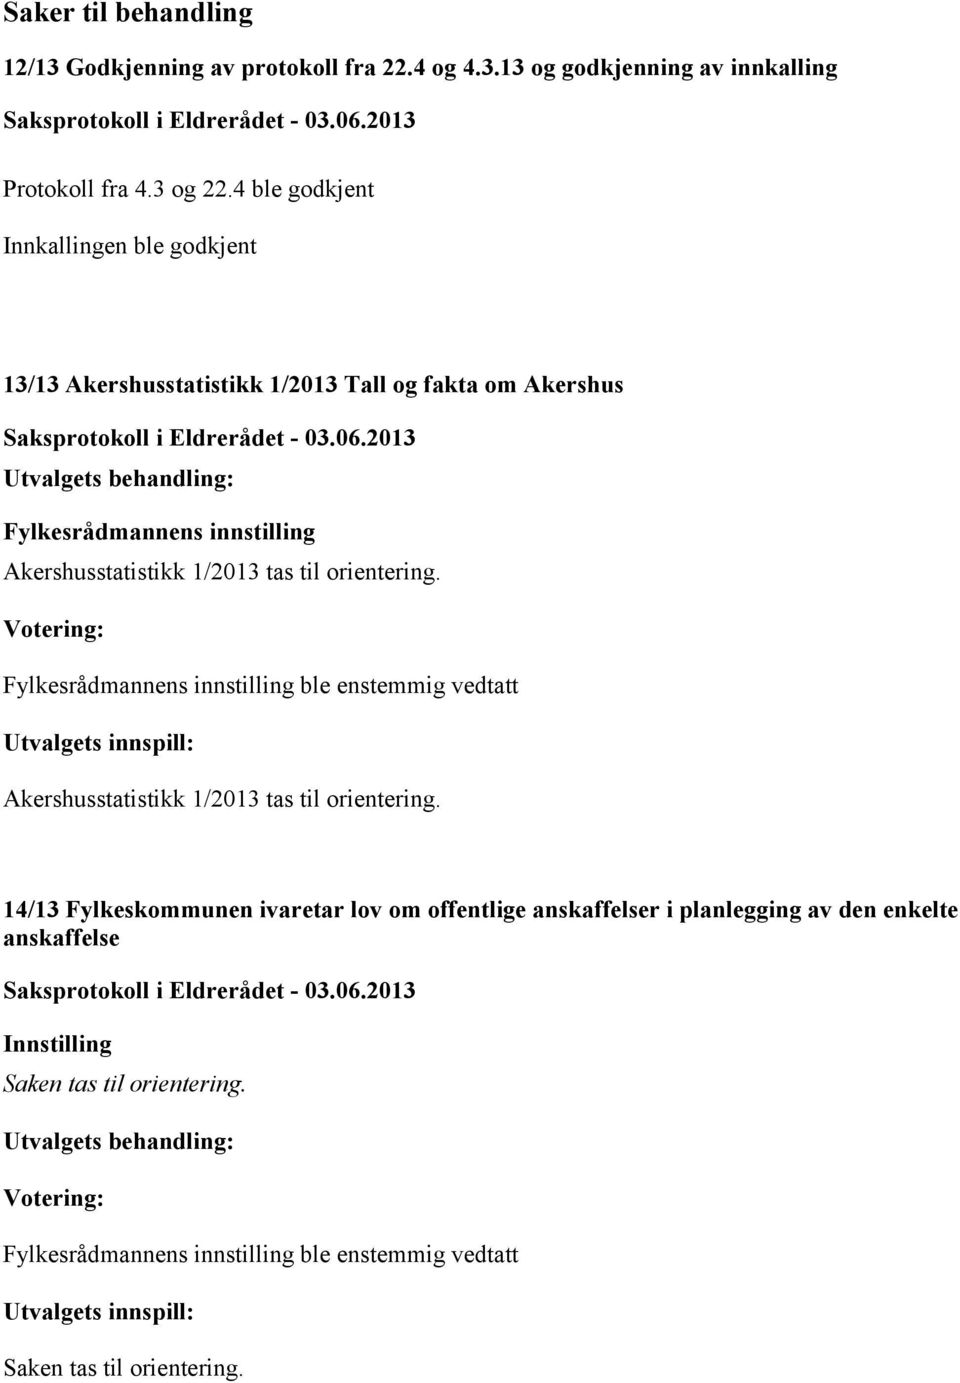 Akershusstatistikk 1/2013 tas til orientering. Utvalgets innspill: Akershusstatistikk 1/2013 tas til orientering.